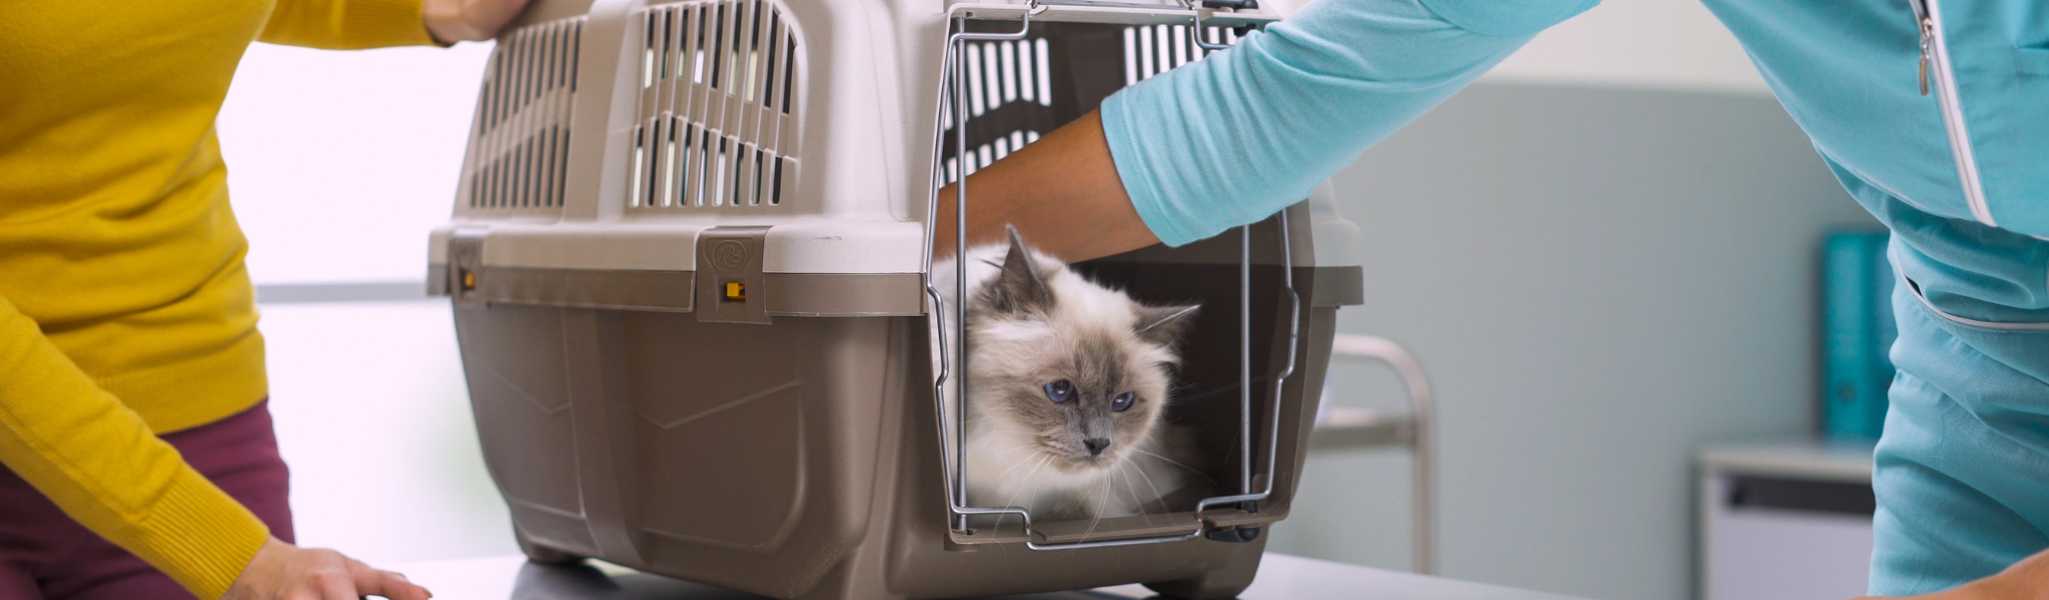 Caisse de transport : astuces pour y faire rentrer son chat